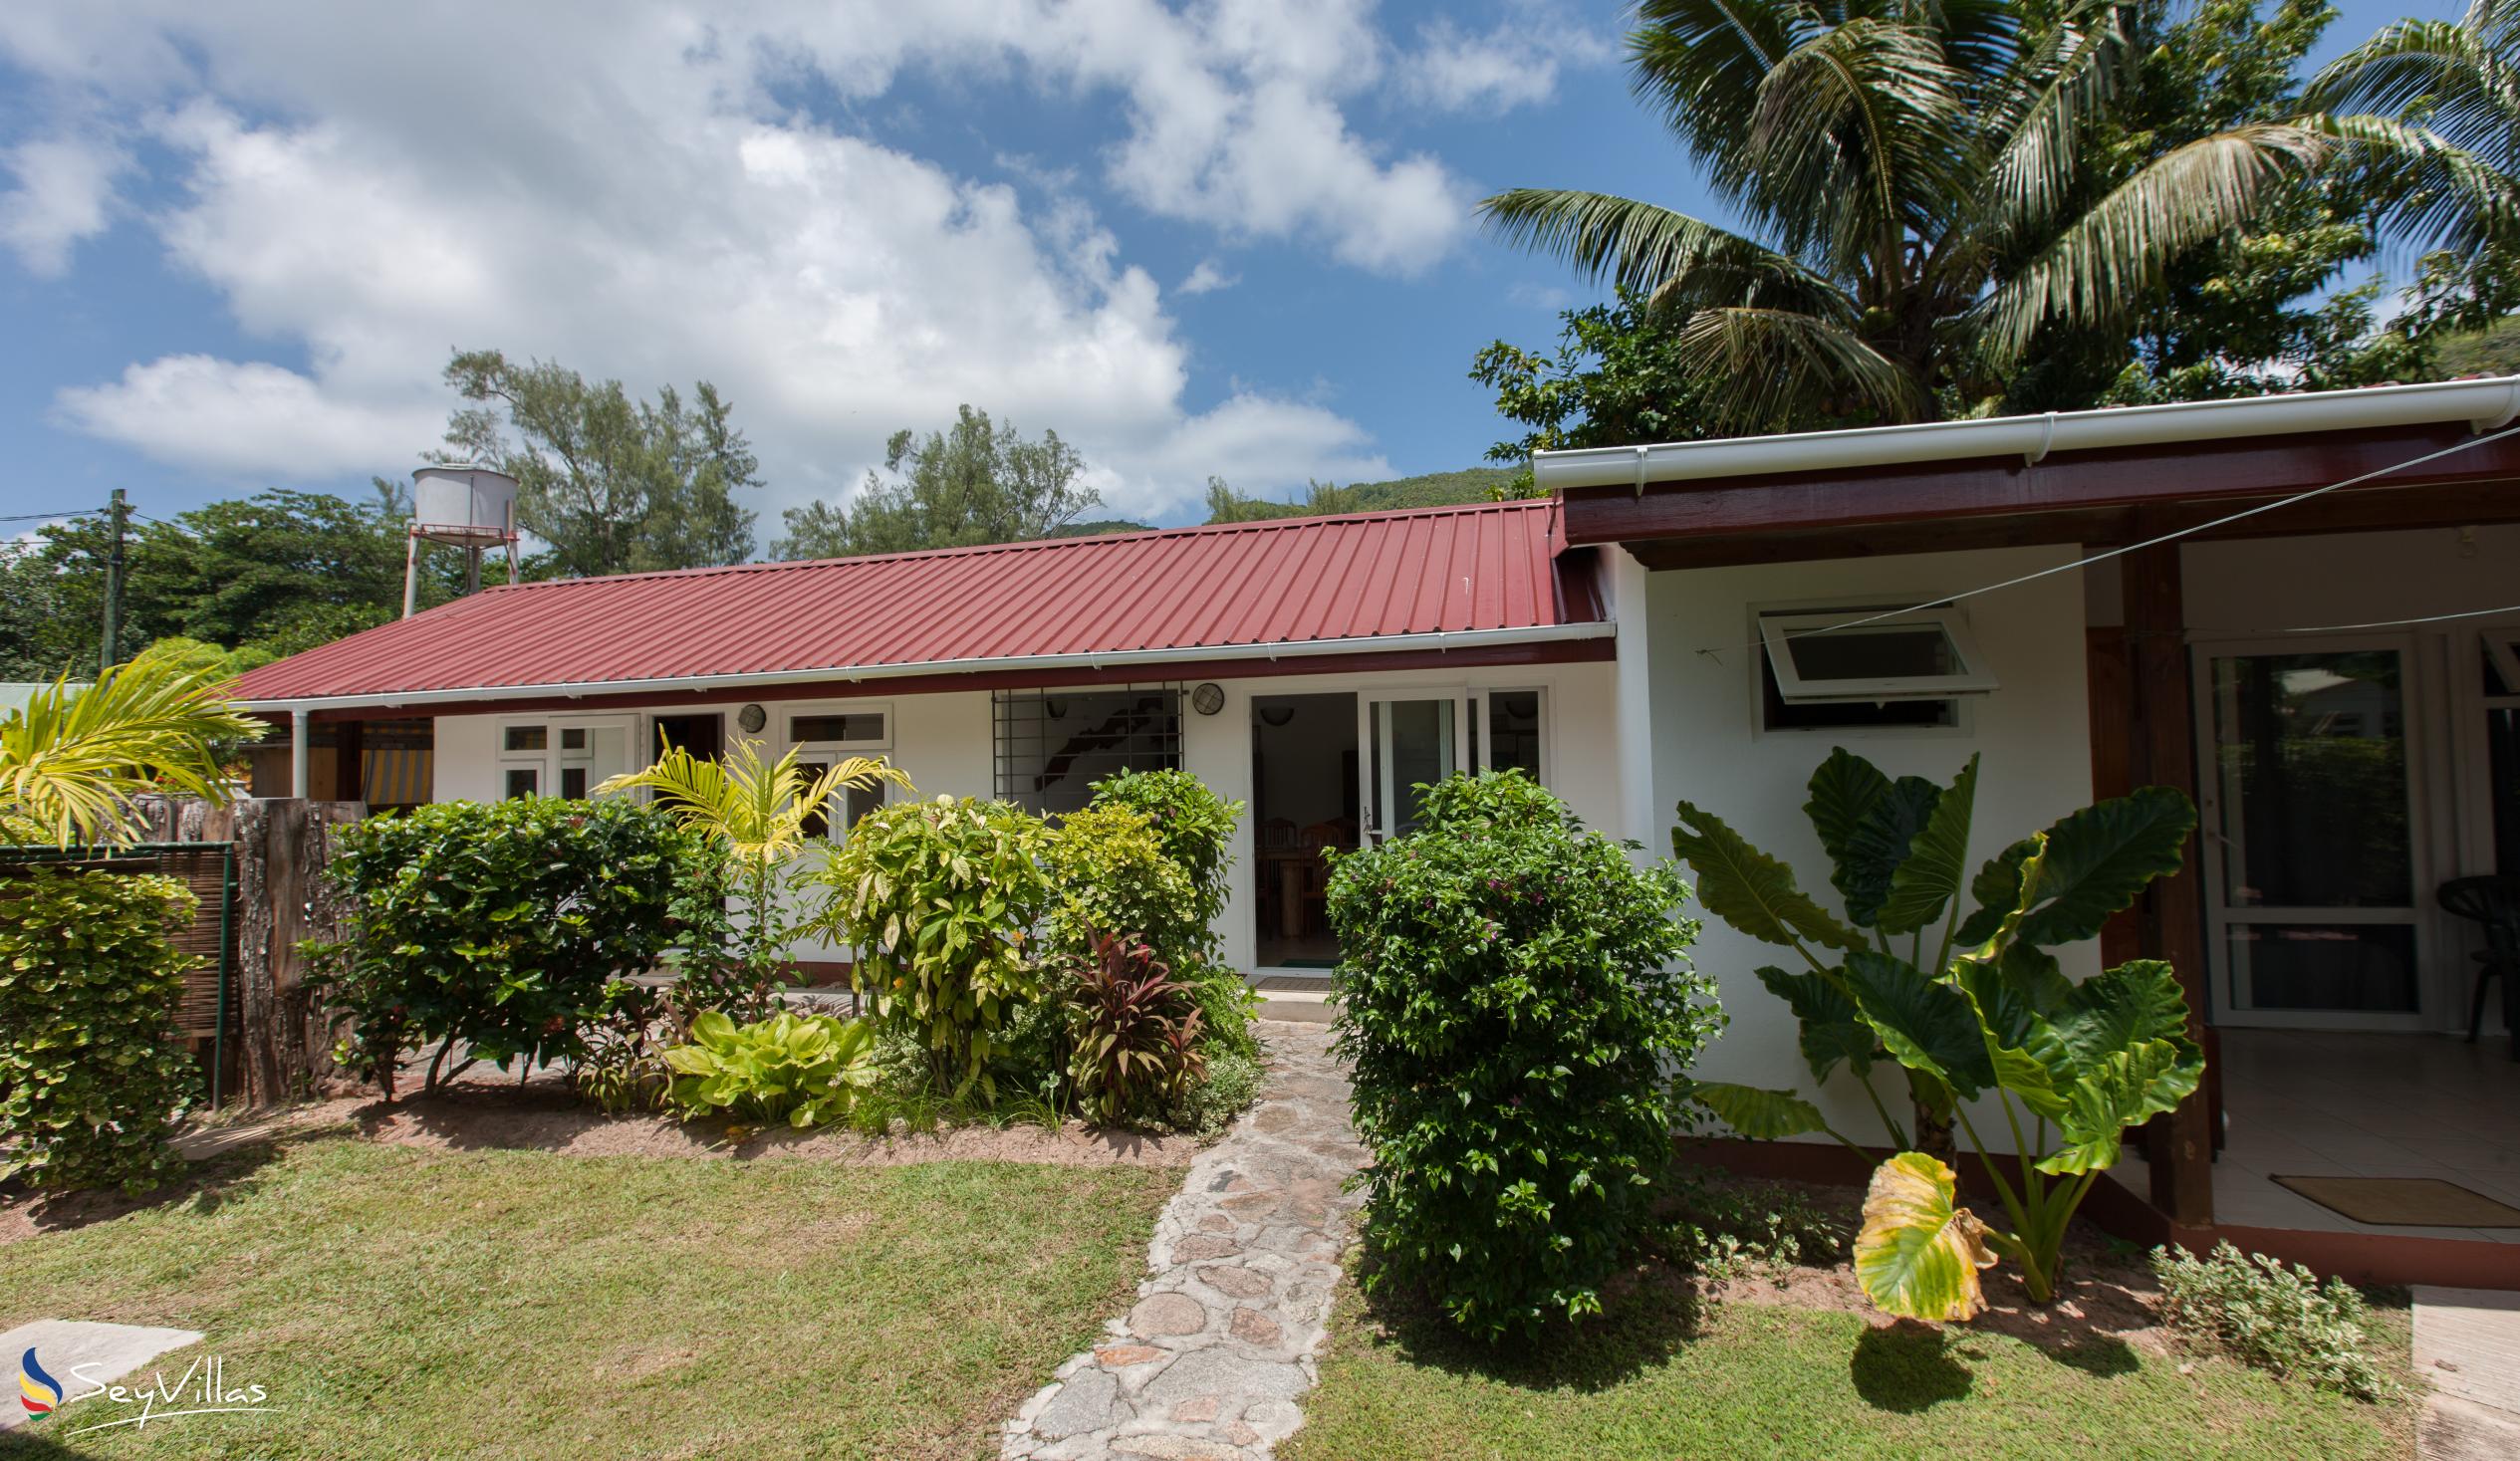 Foto 3: Le Relax St. Joseph Guest House - Aussenbereich - Praslin (Seychellen)